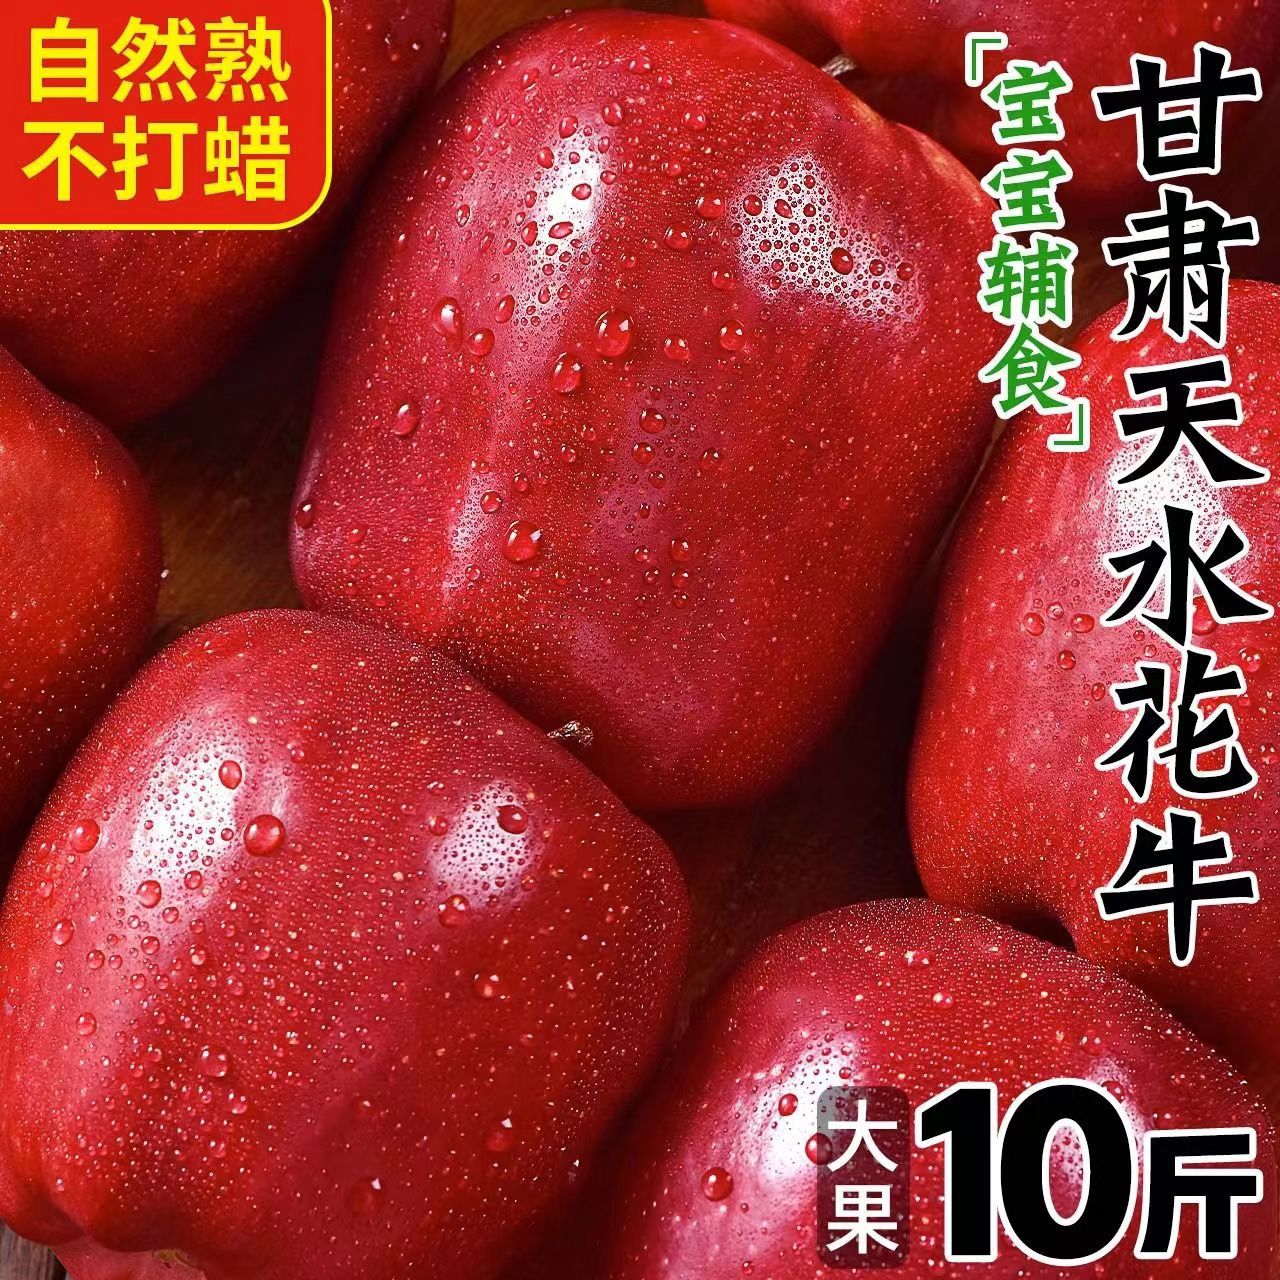 【越放越粉甜】花牛苹果甘肃蛇果当季新鲜粉面沙甜整箱10/5斤批发